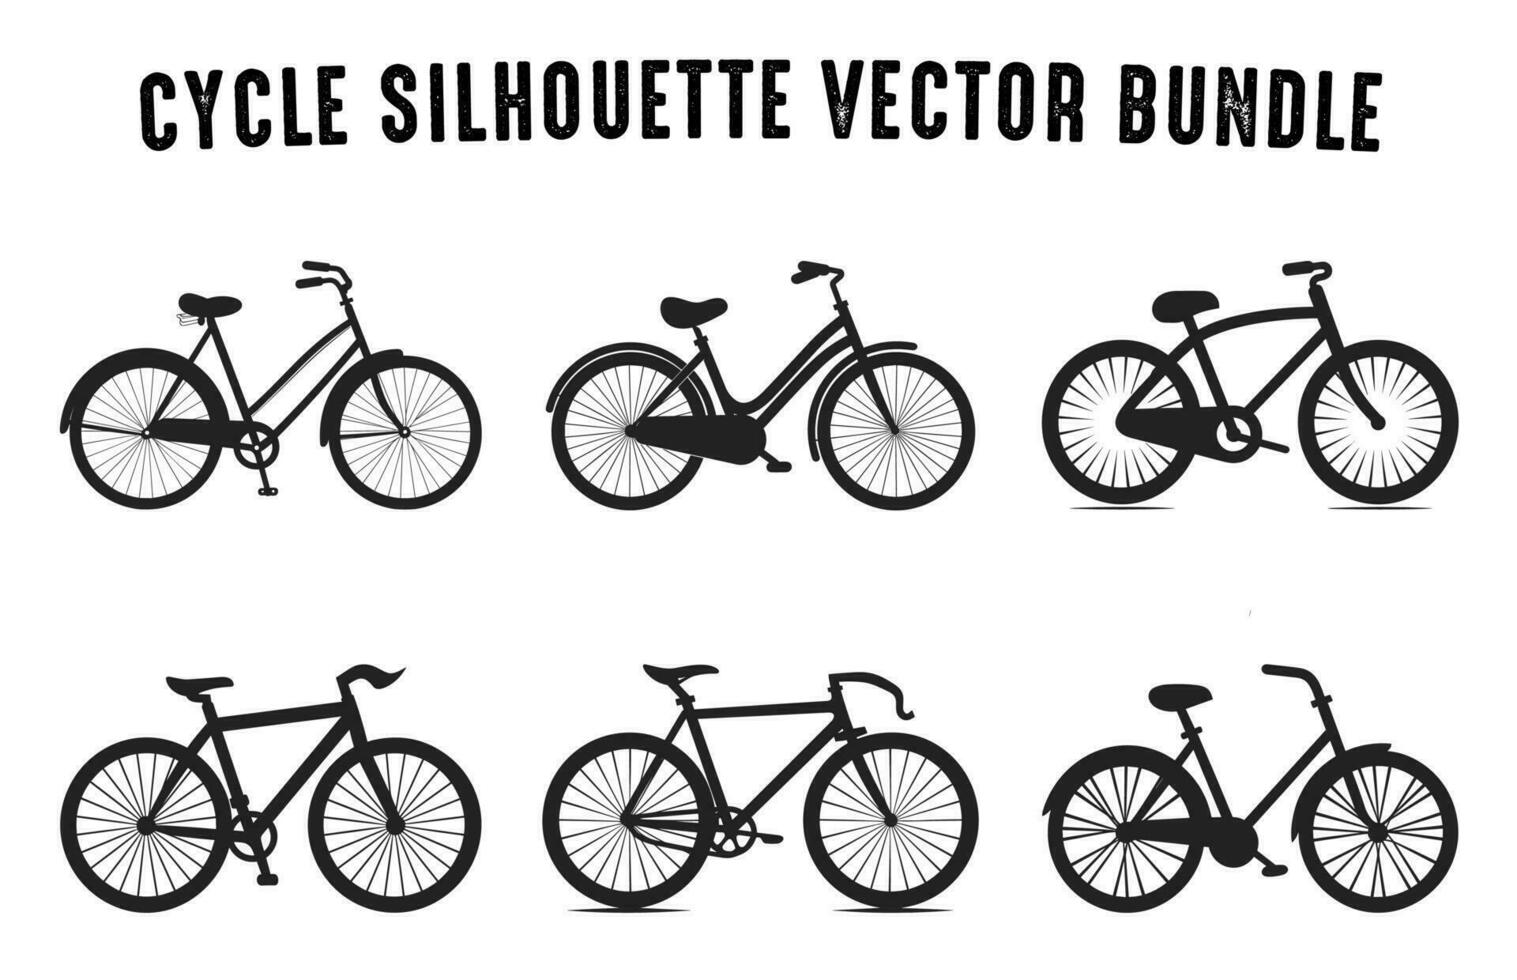 uppsättning av cykel silhuetter vektor illustration, olika typ av cykel vektor samling isolerat på en vit bakgrund